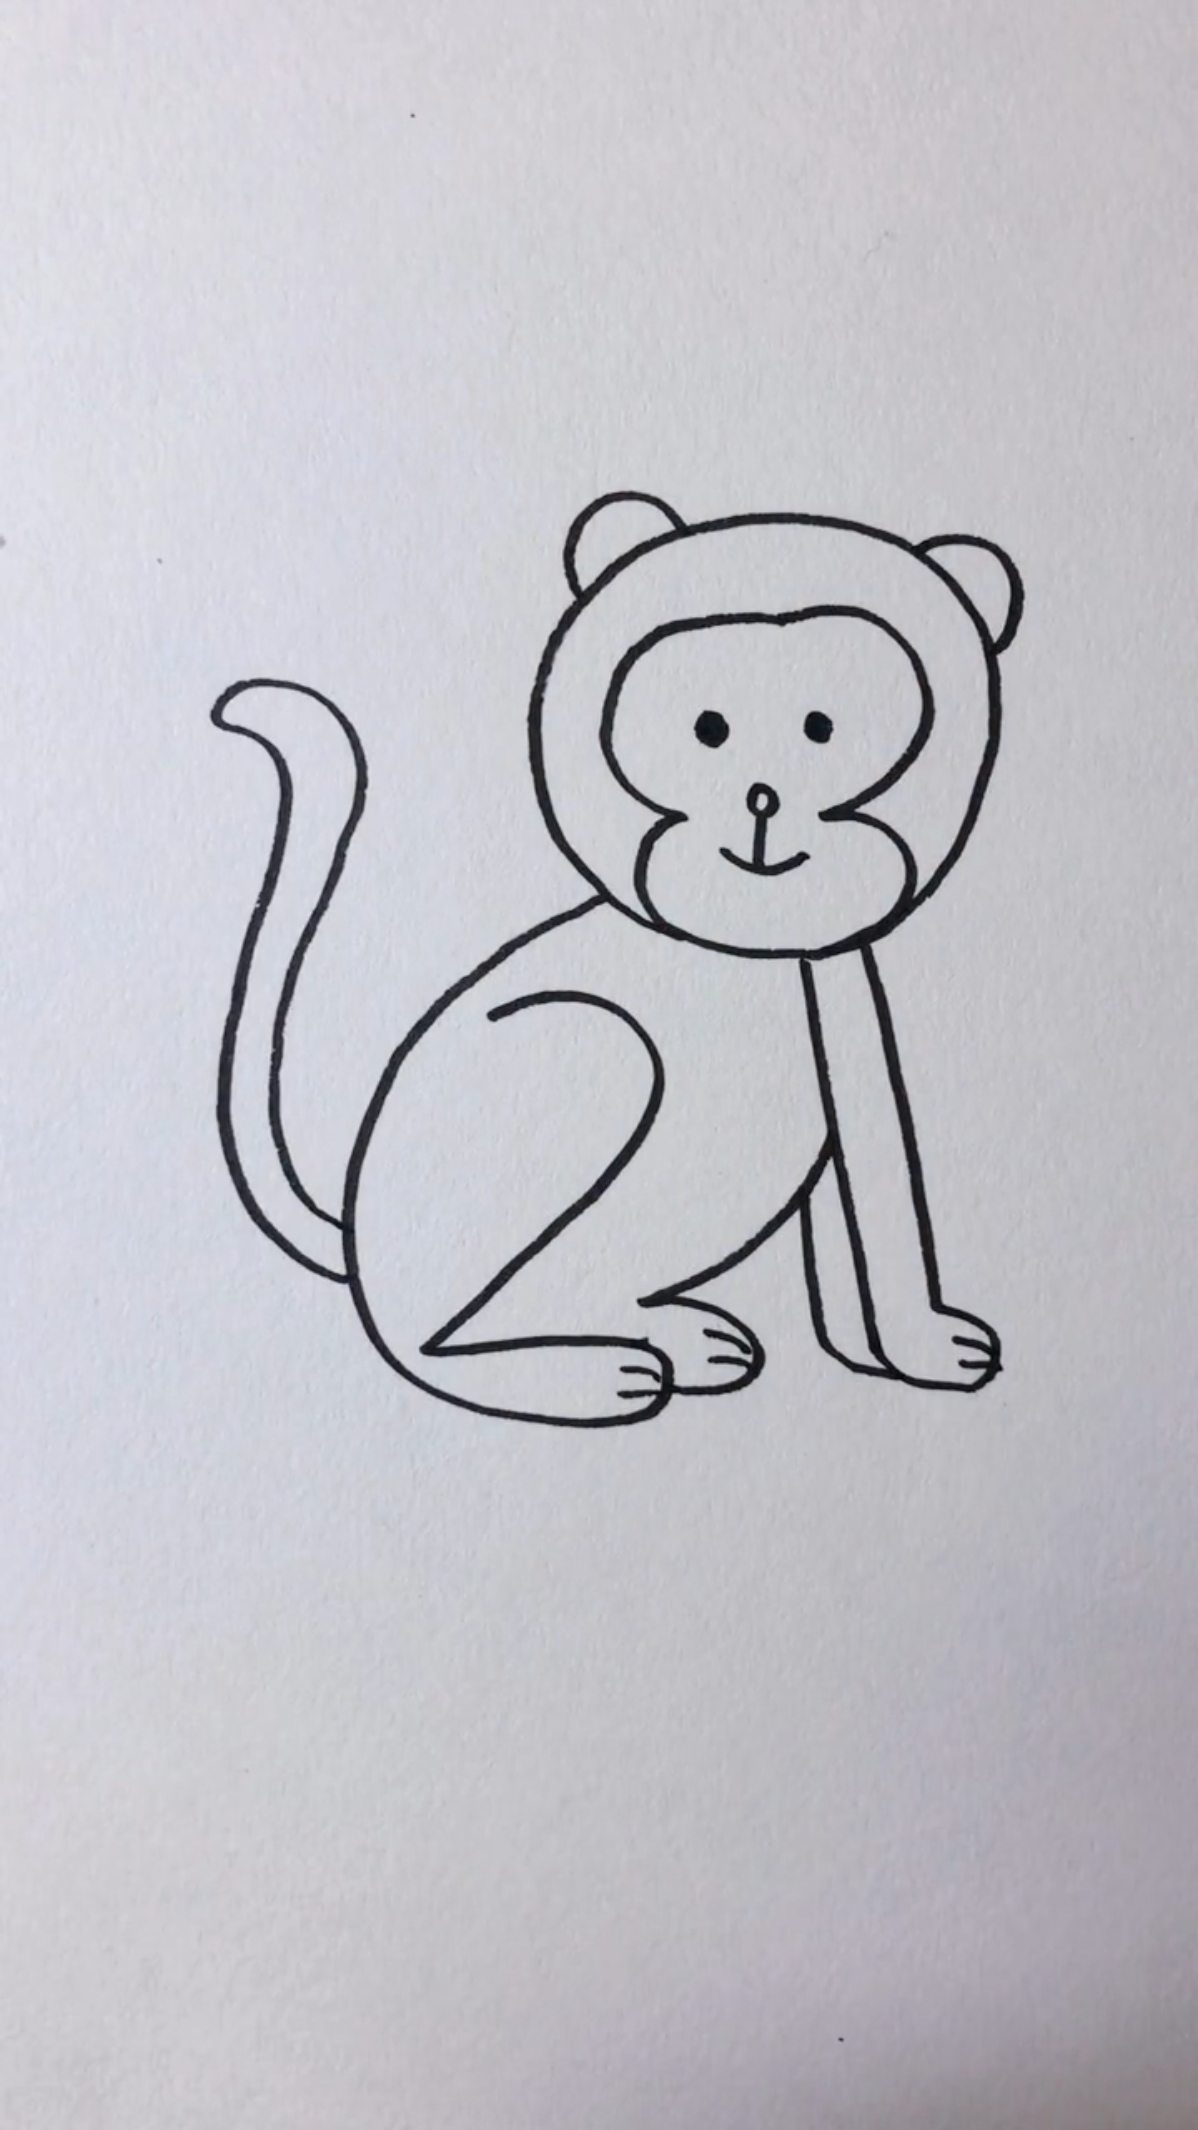 数字猴子简笔画图片